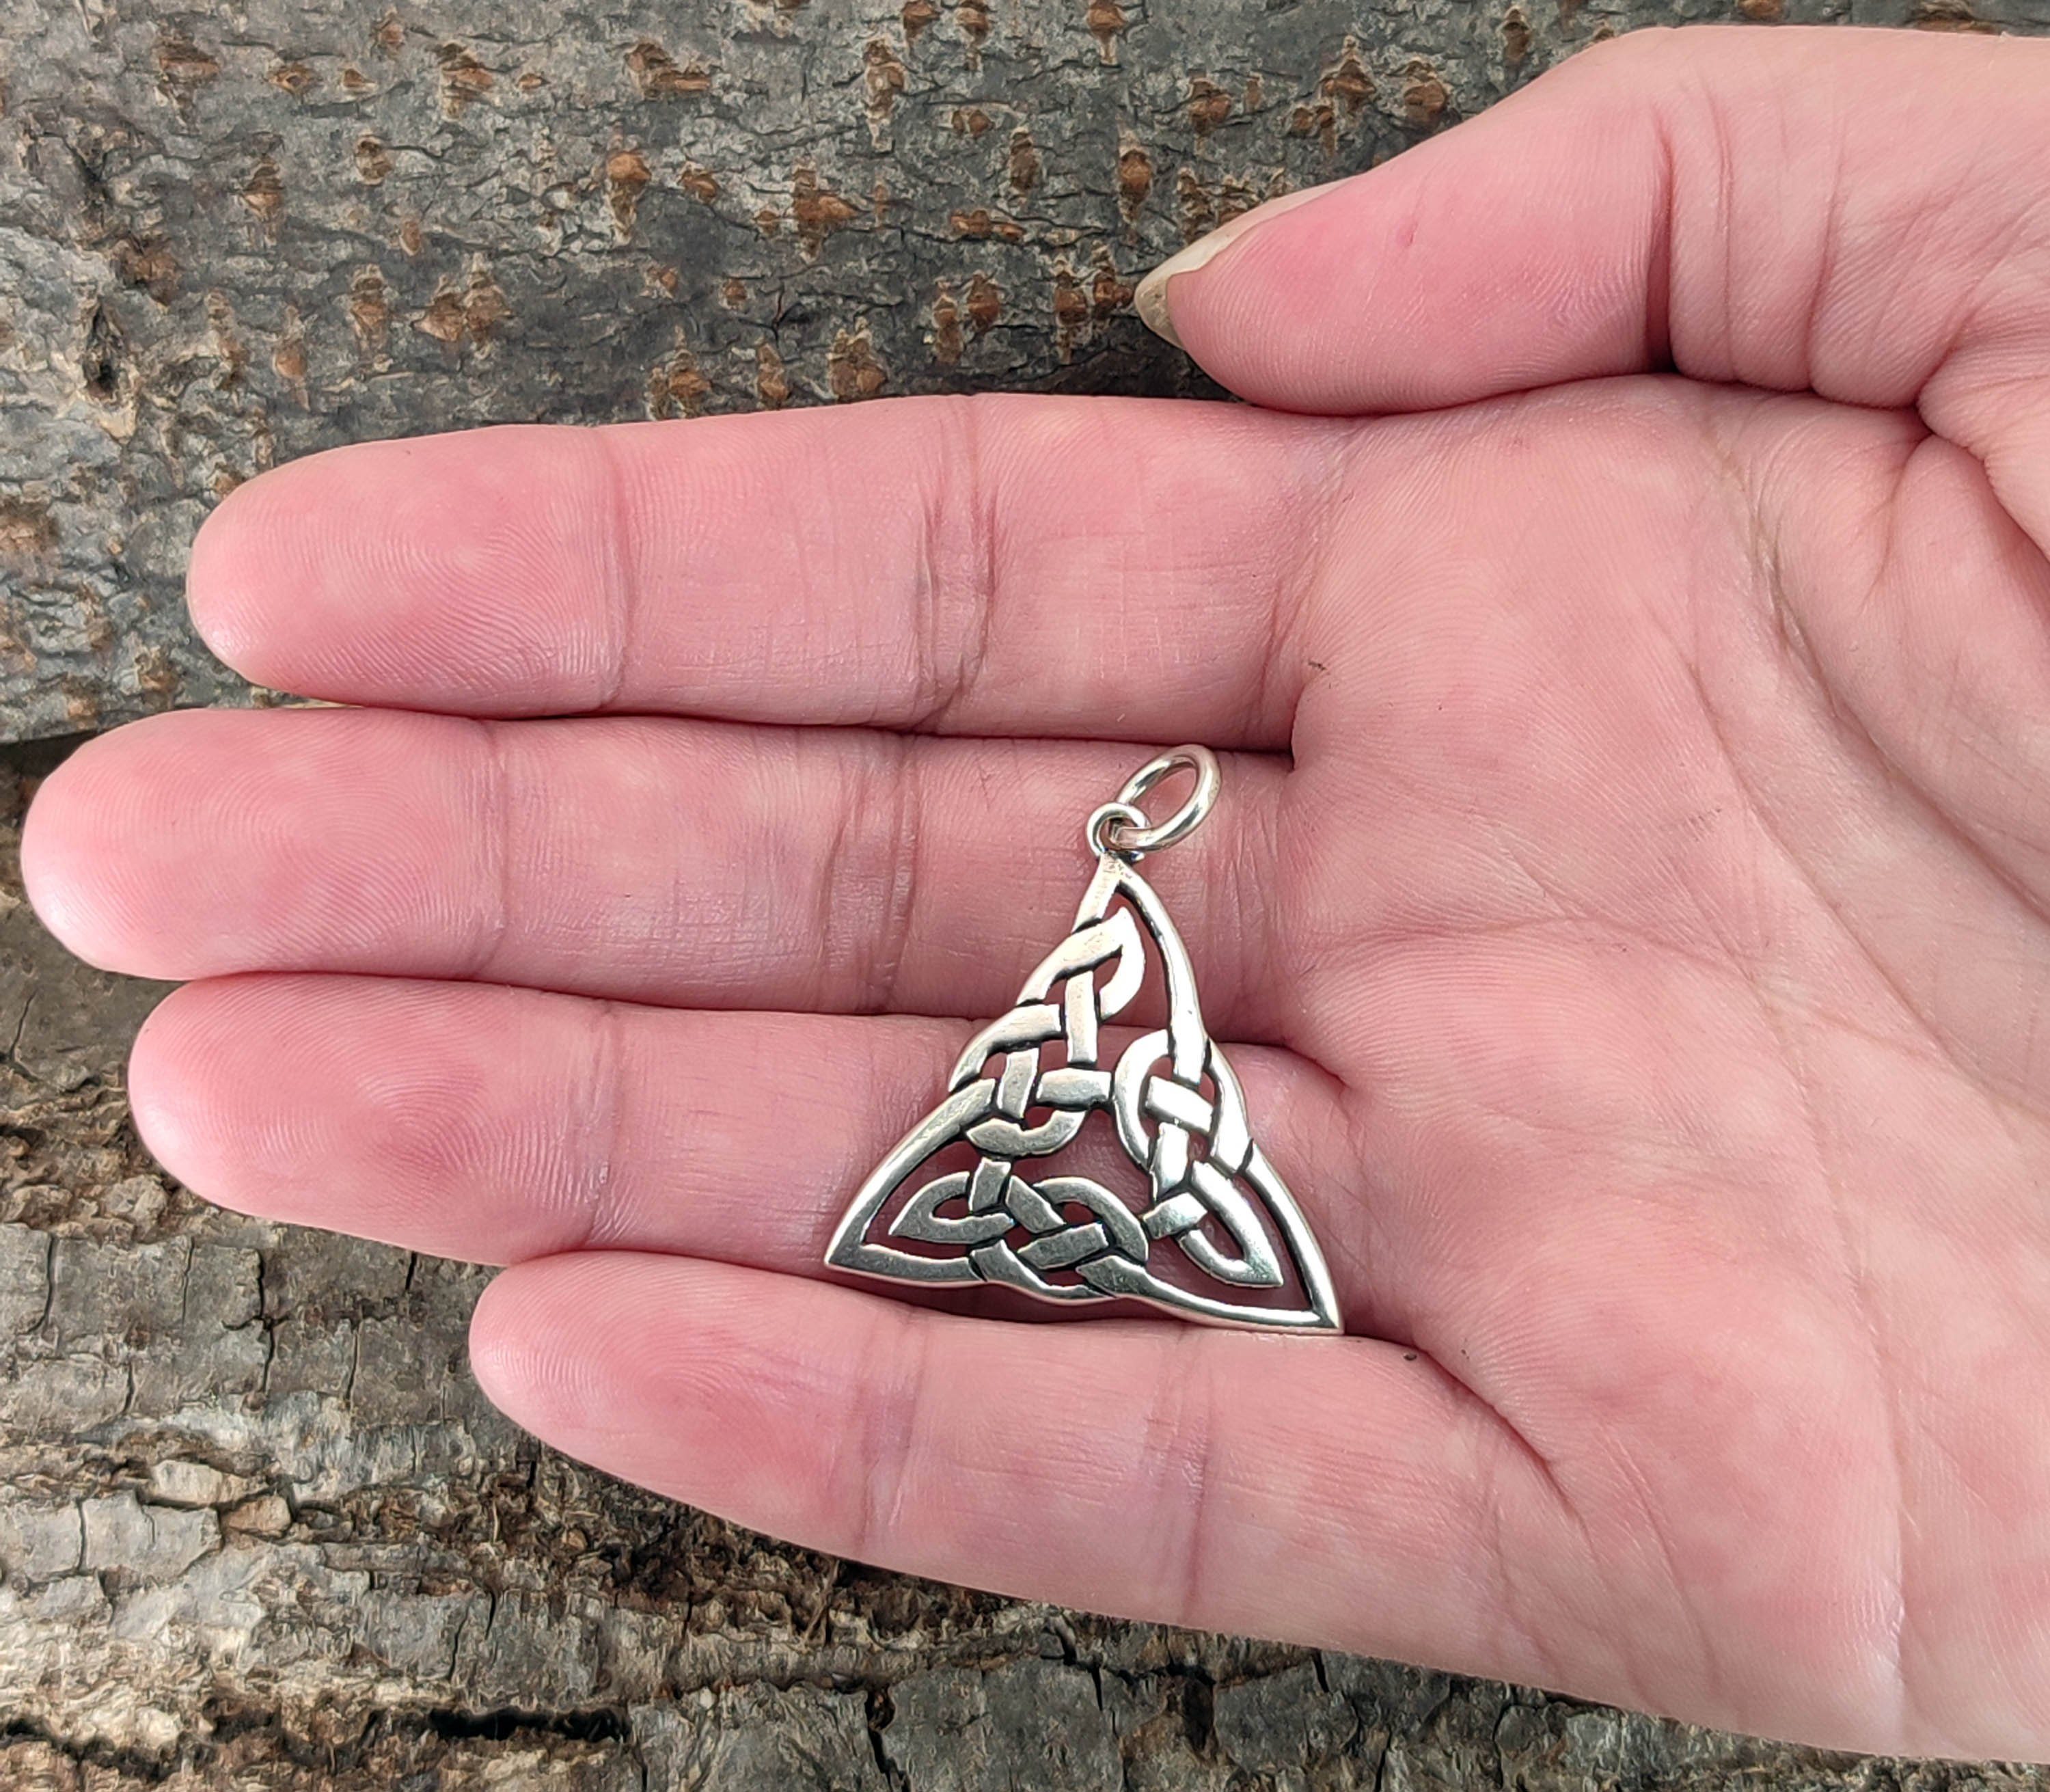 keltischer Kiss Dreieck Knoten Silber Leather Keltenknoten Kettenanhänger 925 of Anhänger